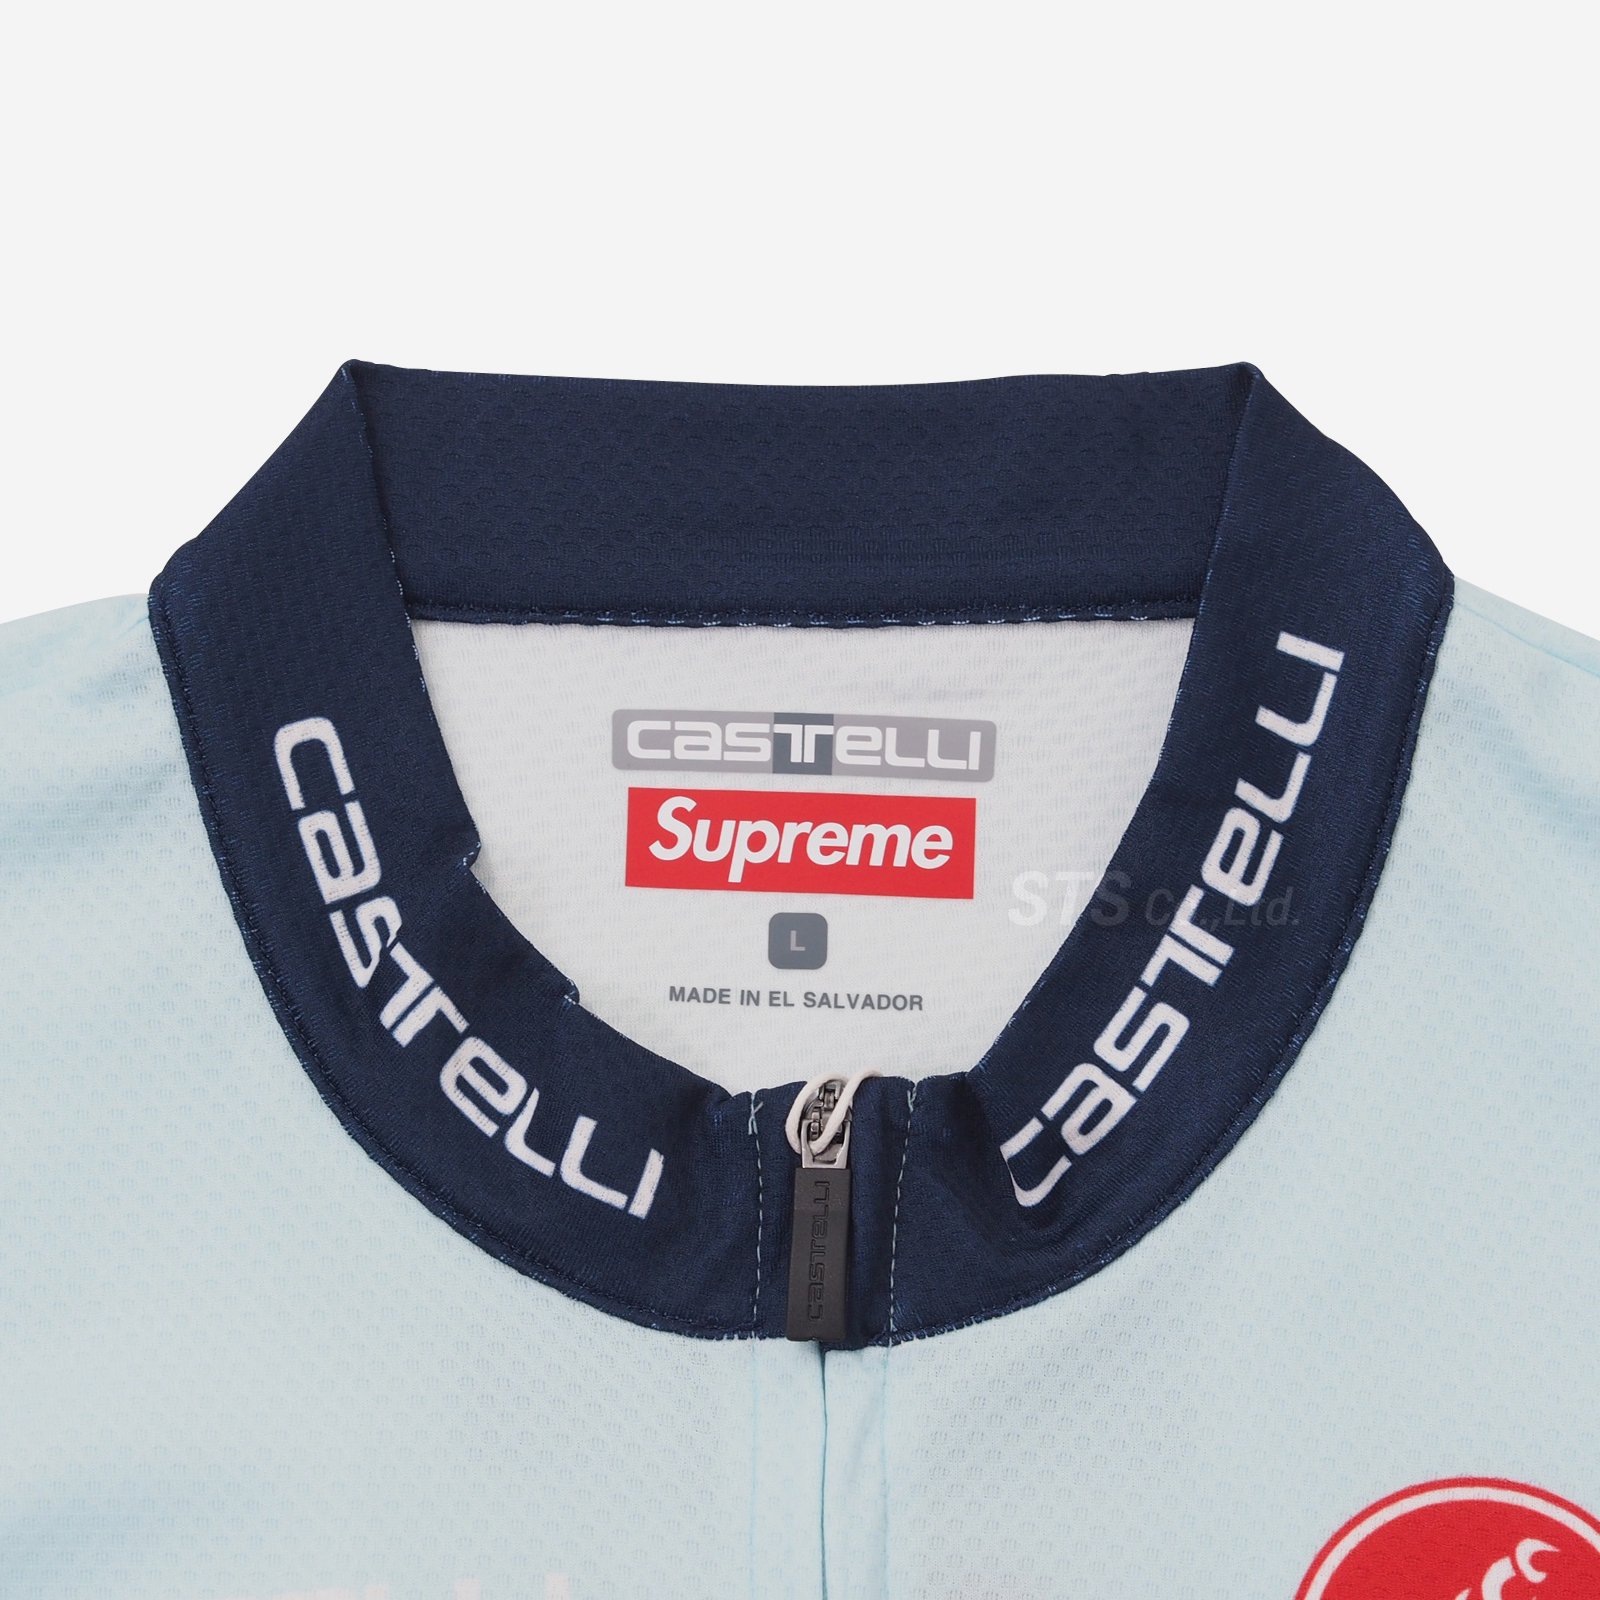 supremeサイズSupreme Castelli Cycling Jersey White XL